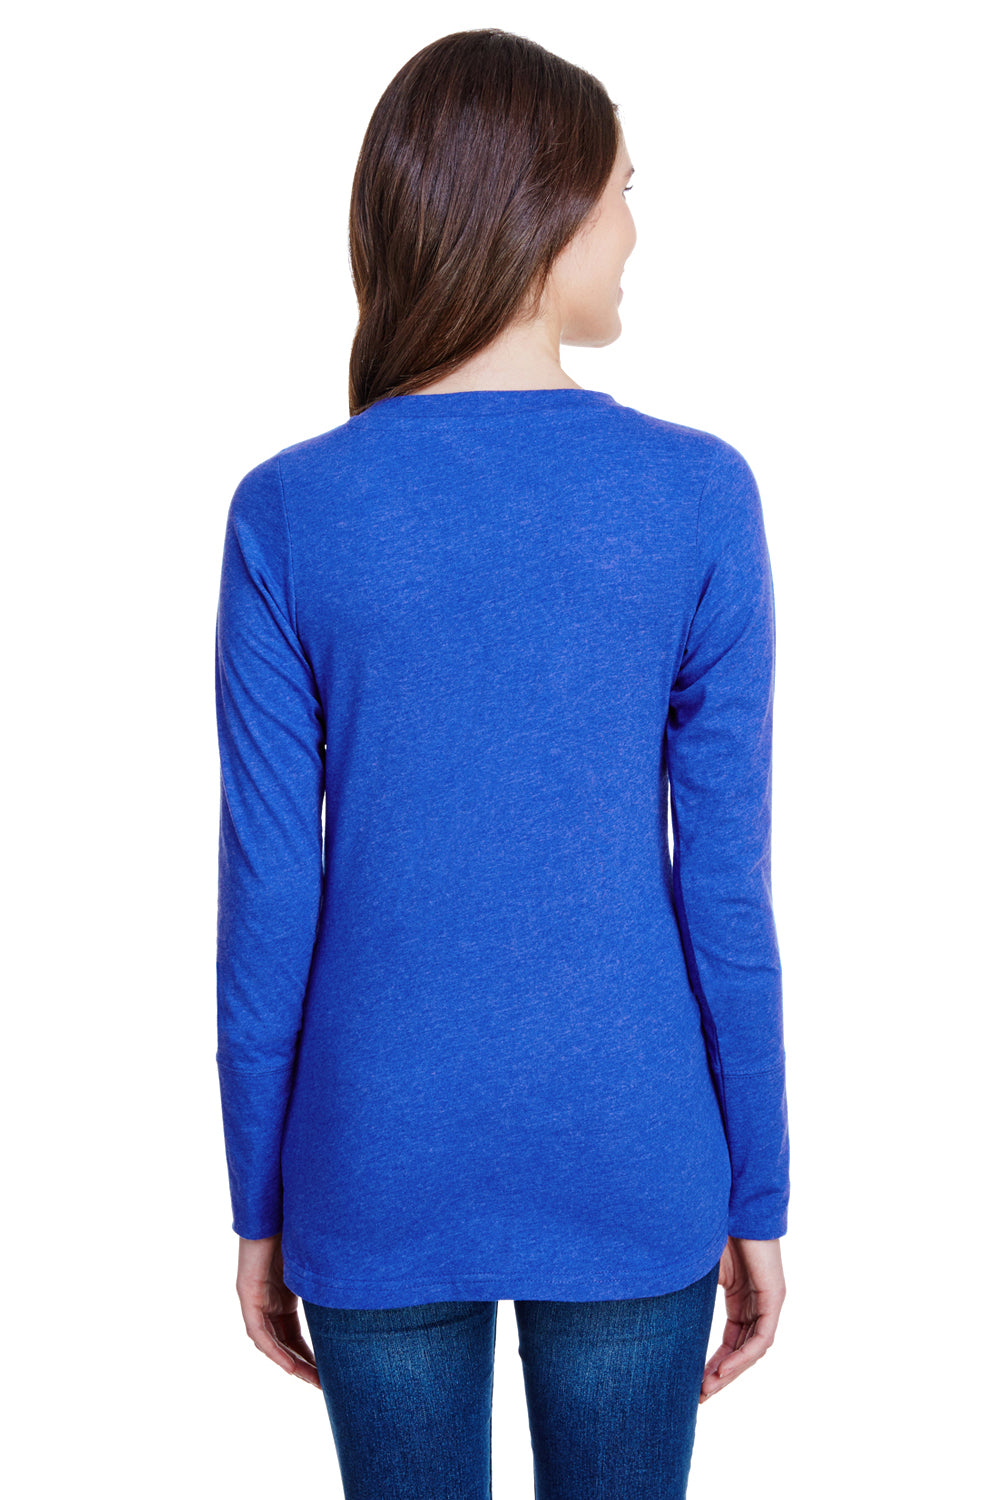 LAT LA3538 Womens Fine Jersey Lace Up Long Sleeve V-Neck T-Shirt Royal Blue Back